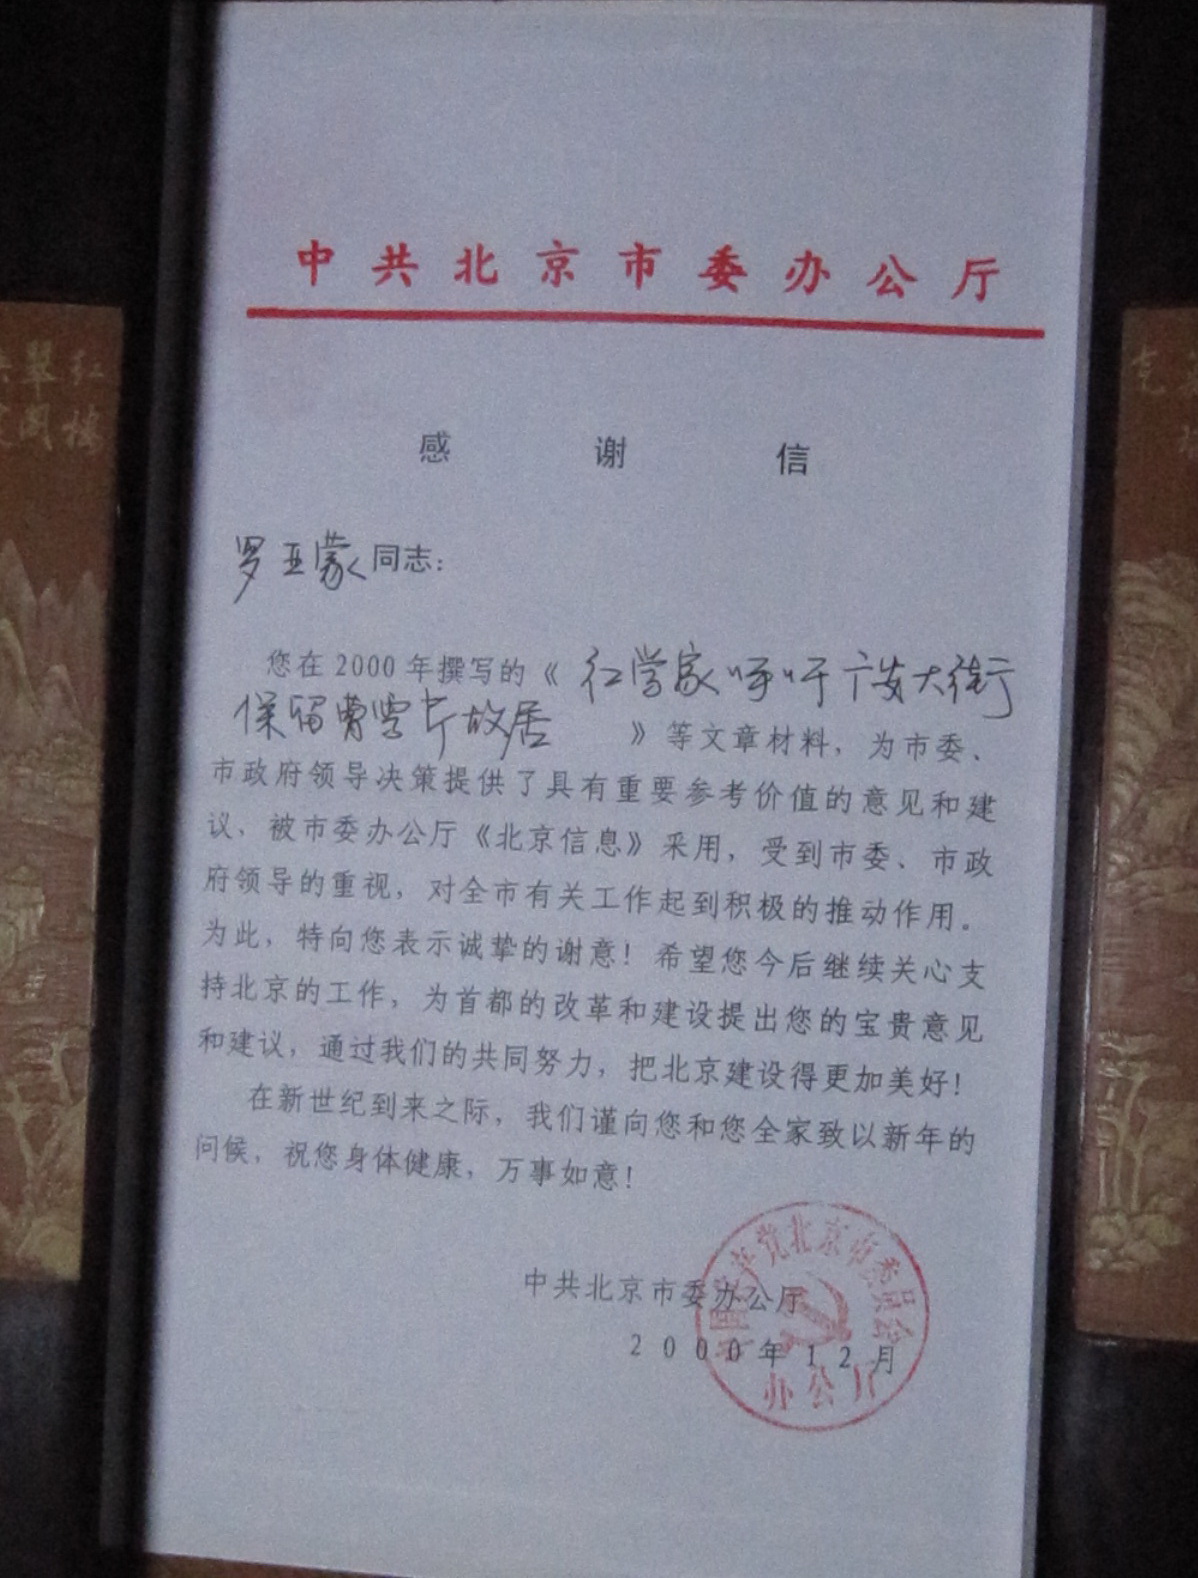 中共北京市委辦公廳給羅亞蒙的感謝信